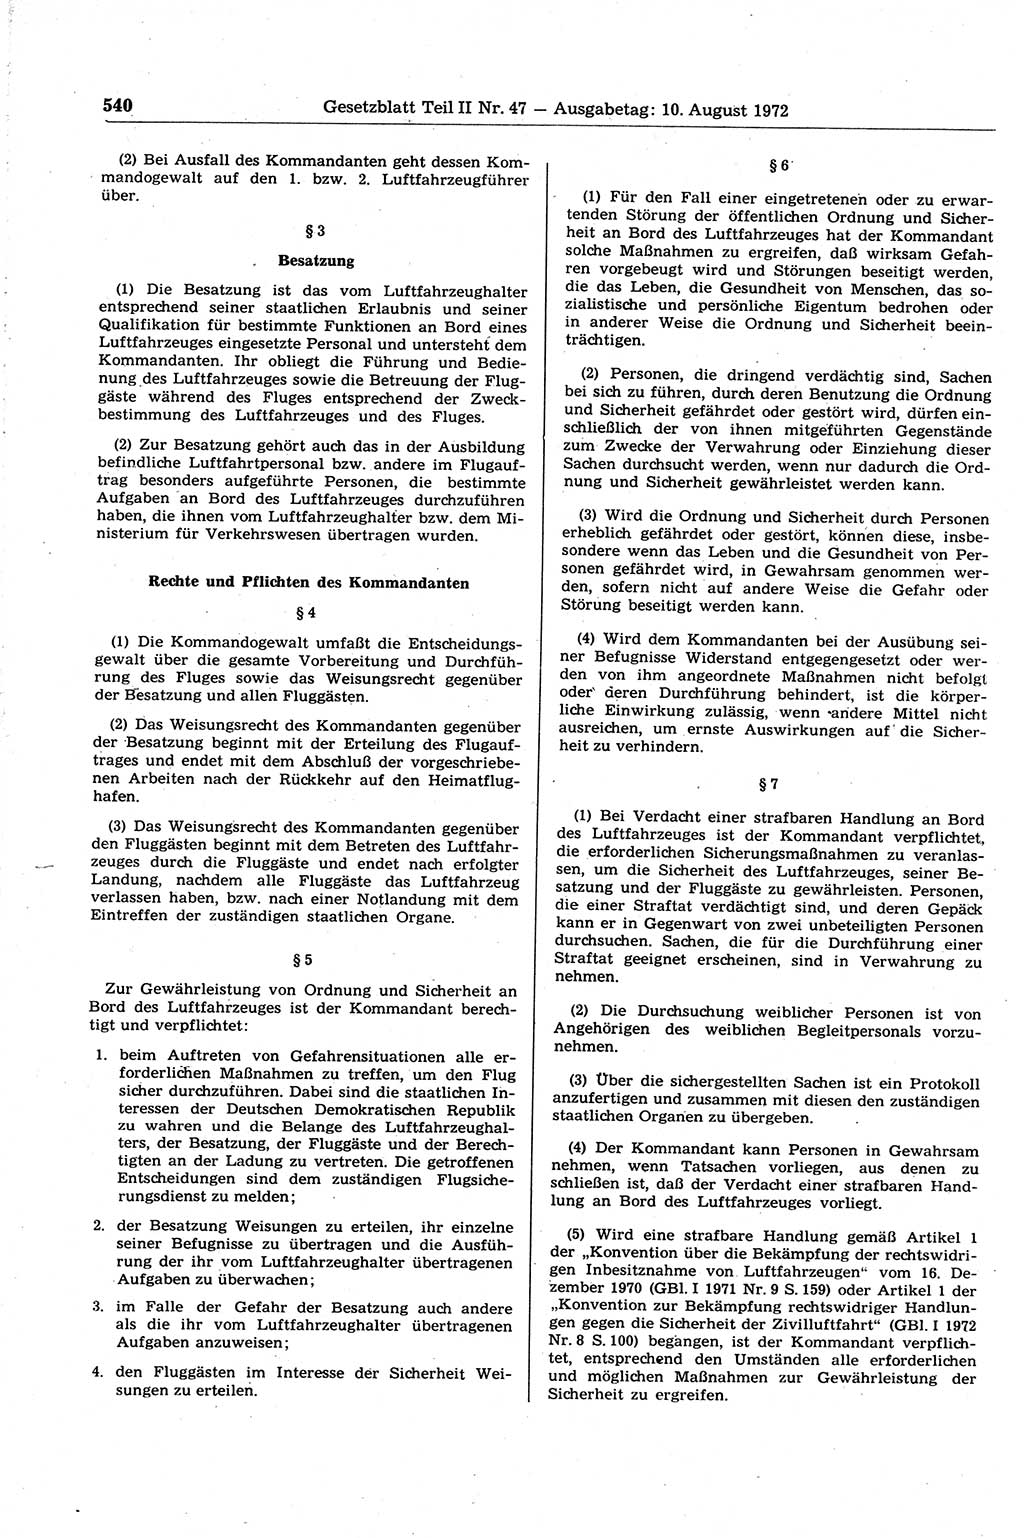 Gesetzblatt (GBl.) der Deutschen Demokratischen Republik (DDR) Teil ⅠⅠ 1972, Seite 540 (GBl. DDR ⅠⅠ 1972, S. 540)